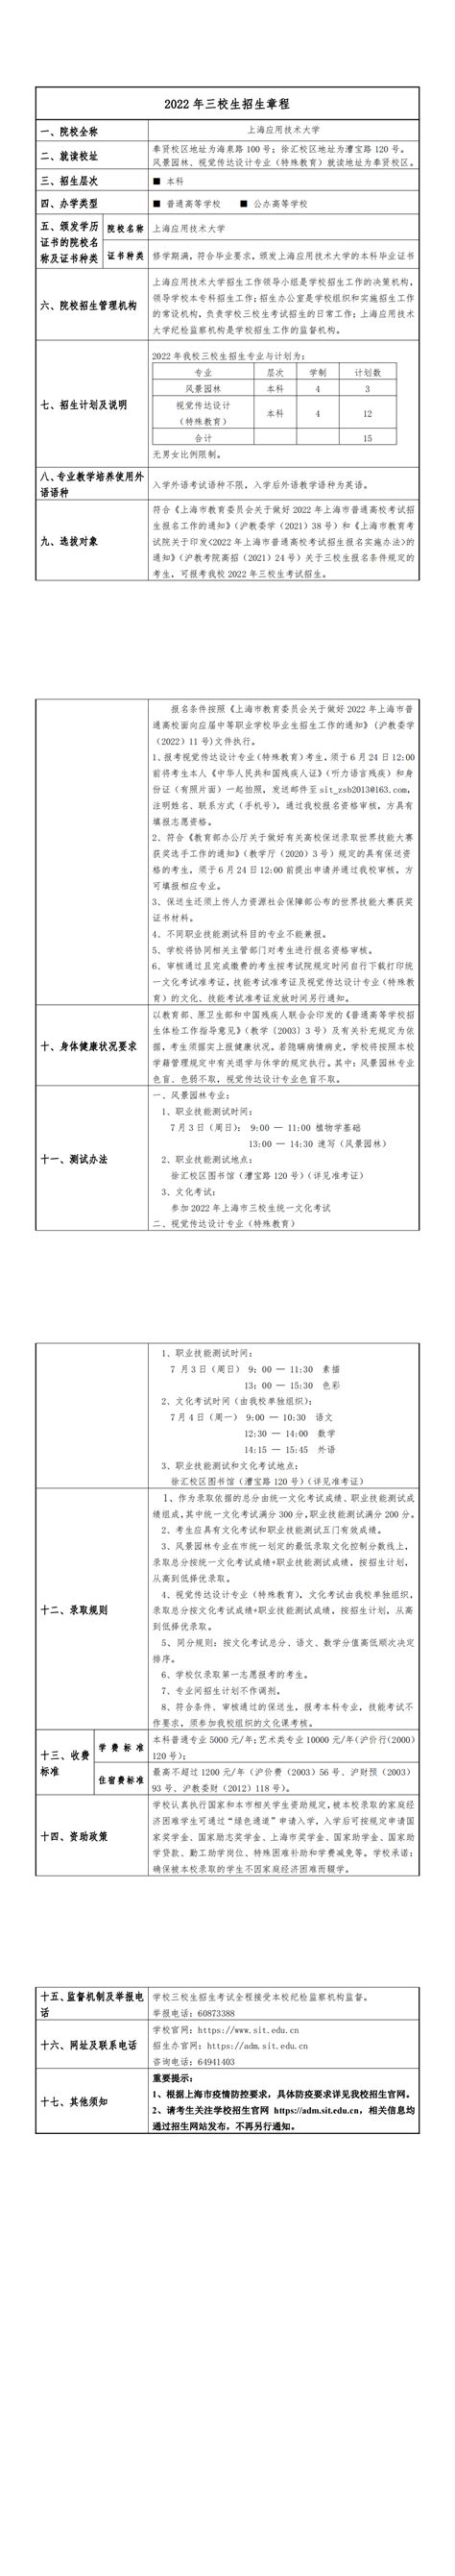 【2022年招生简章】上海应用技术大学三校生高考招生简章 - 三校升APP